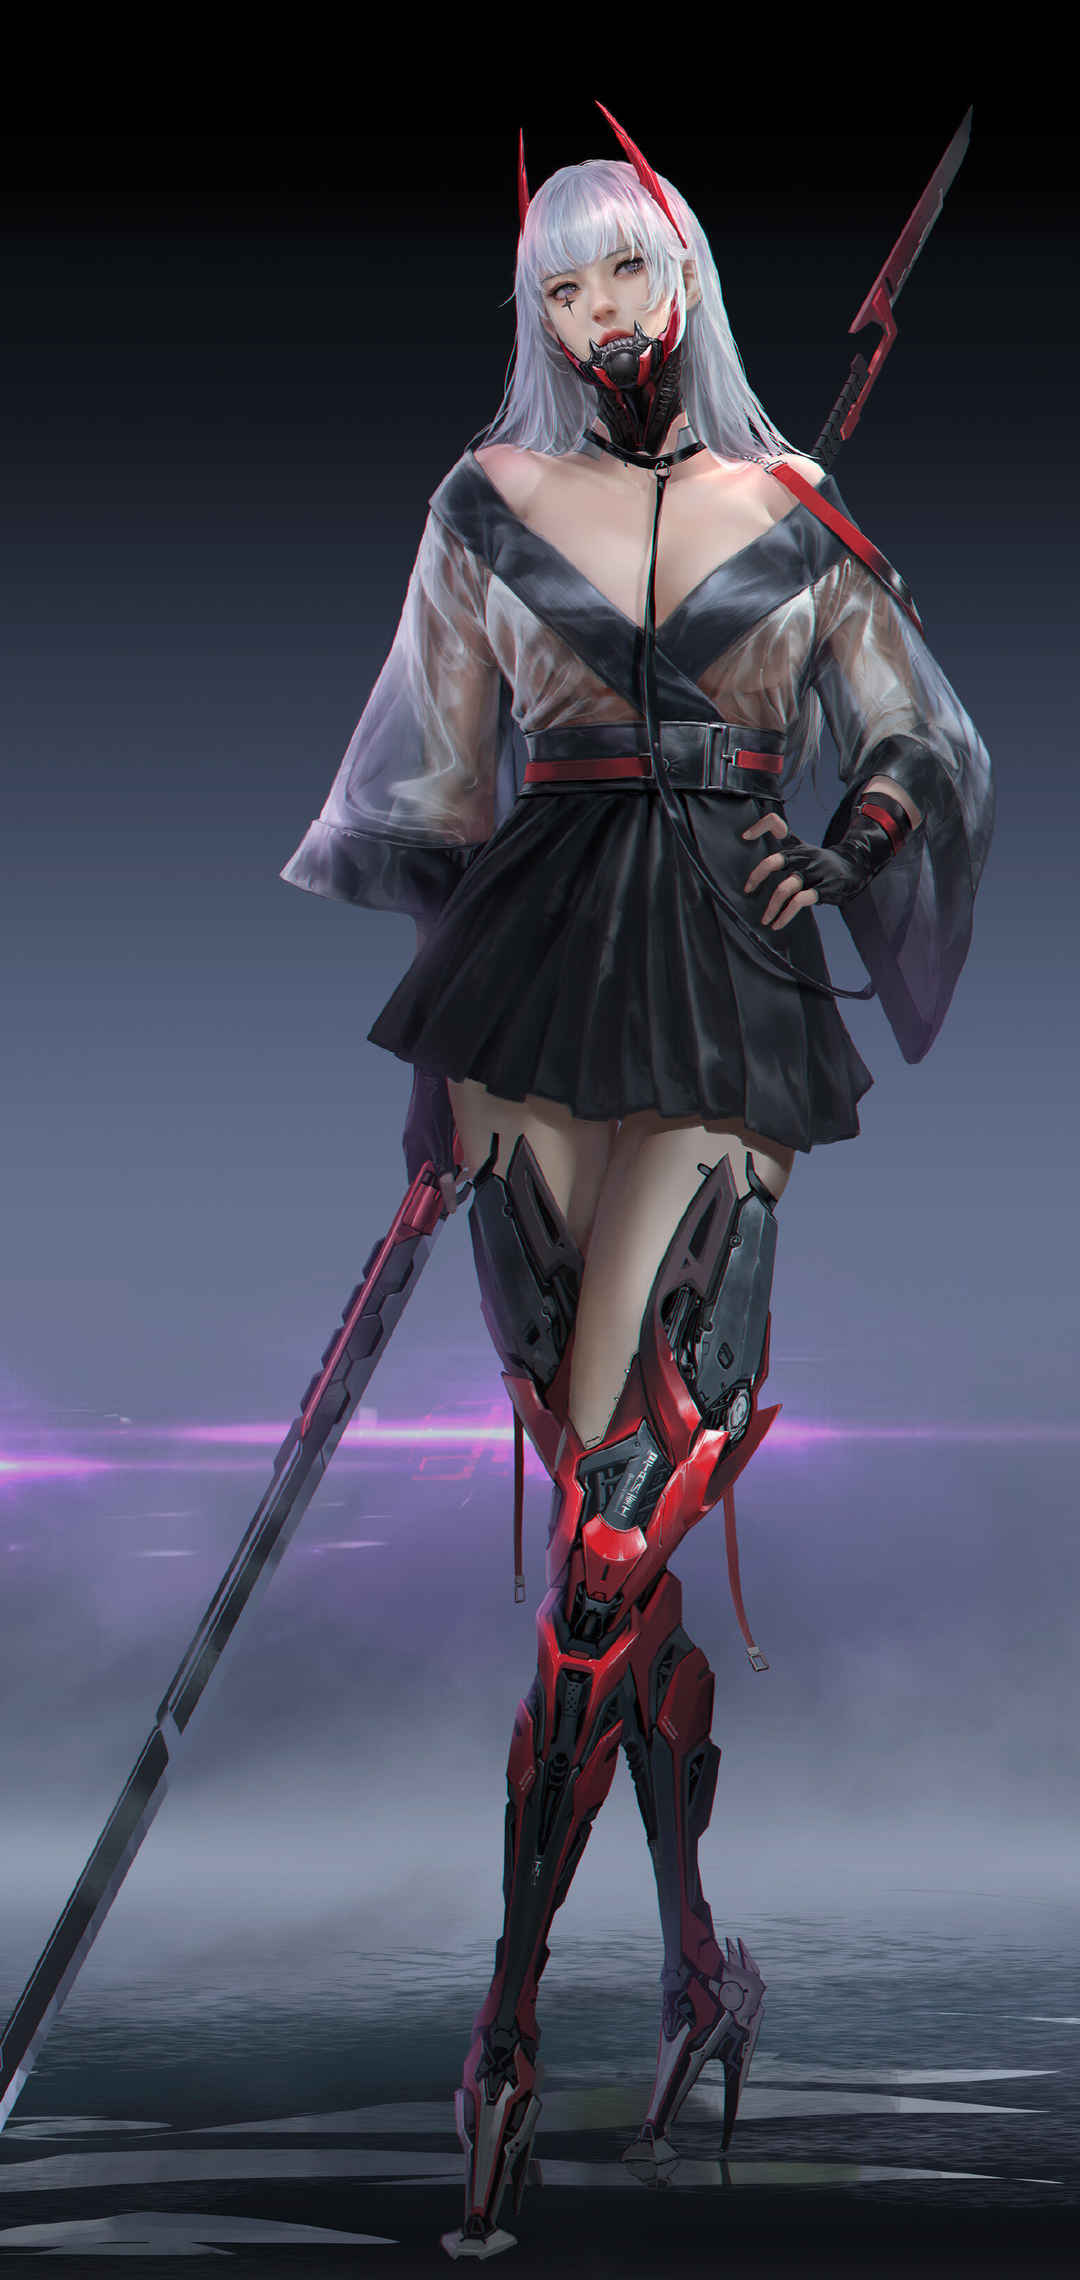 未来女战士 刀剑武器 超酷美女 透视装